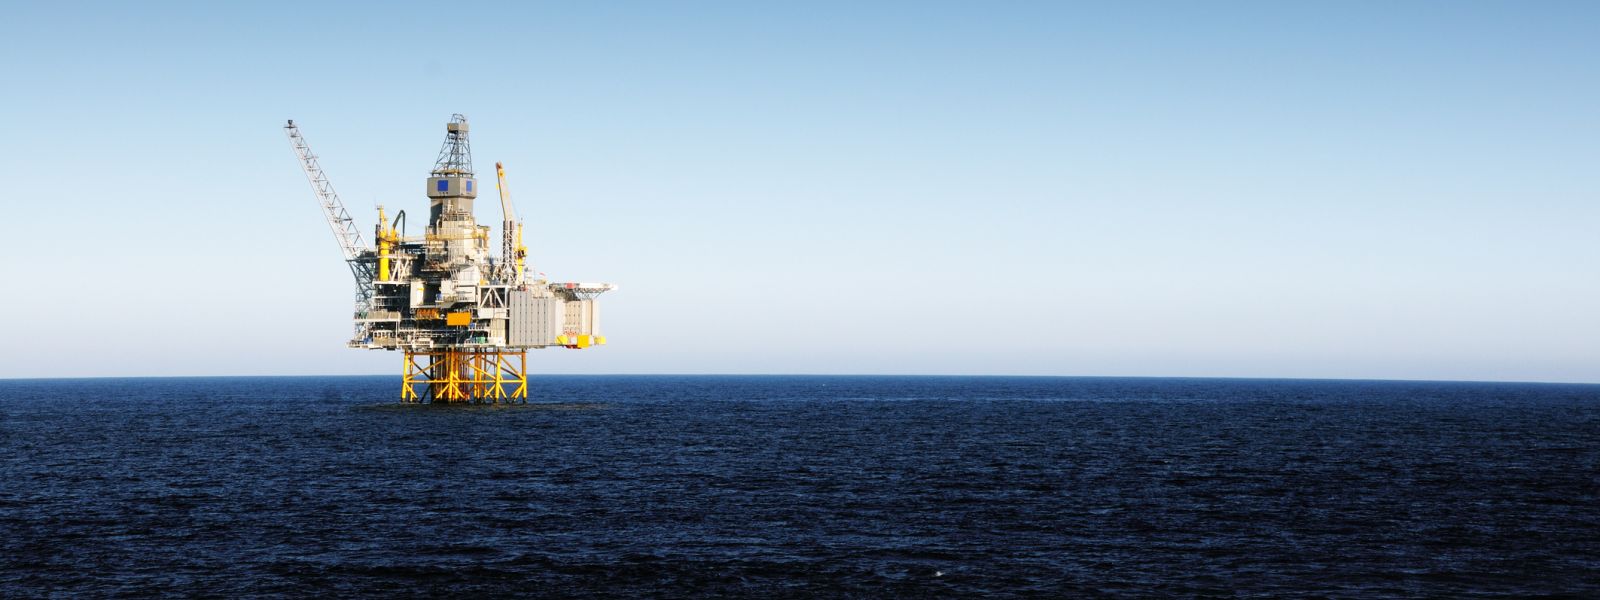 Oil rig in the sea